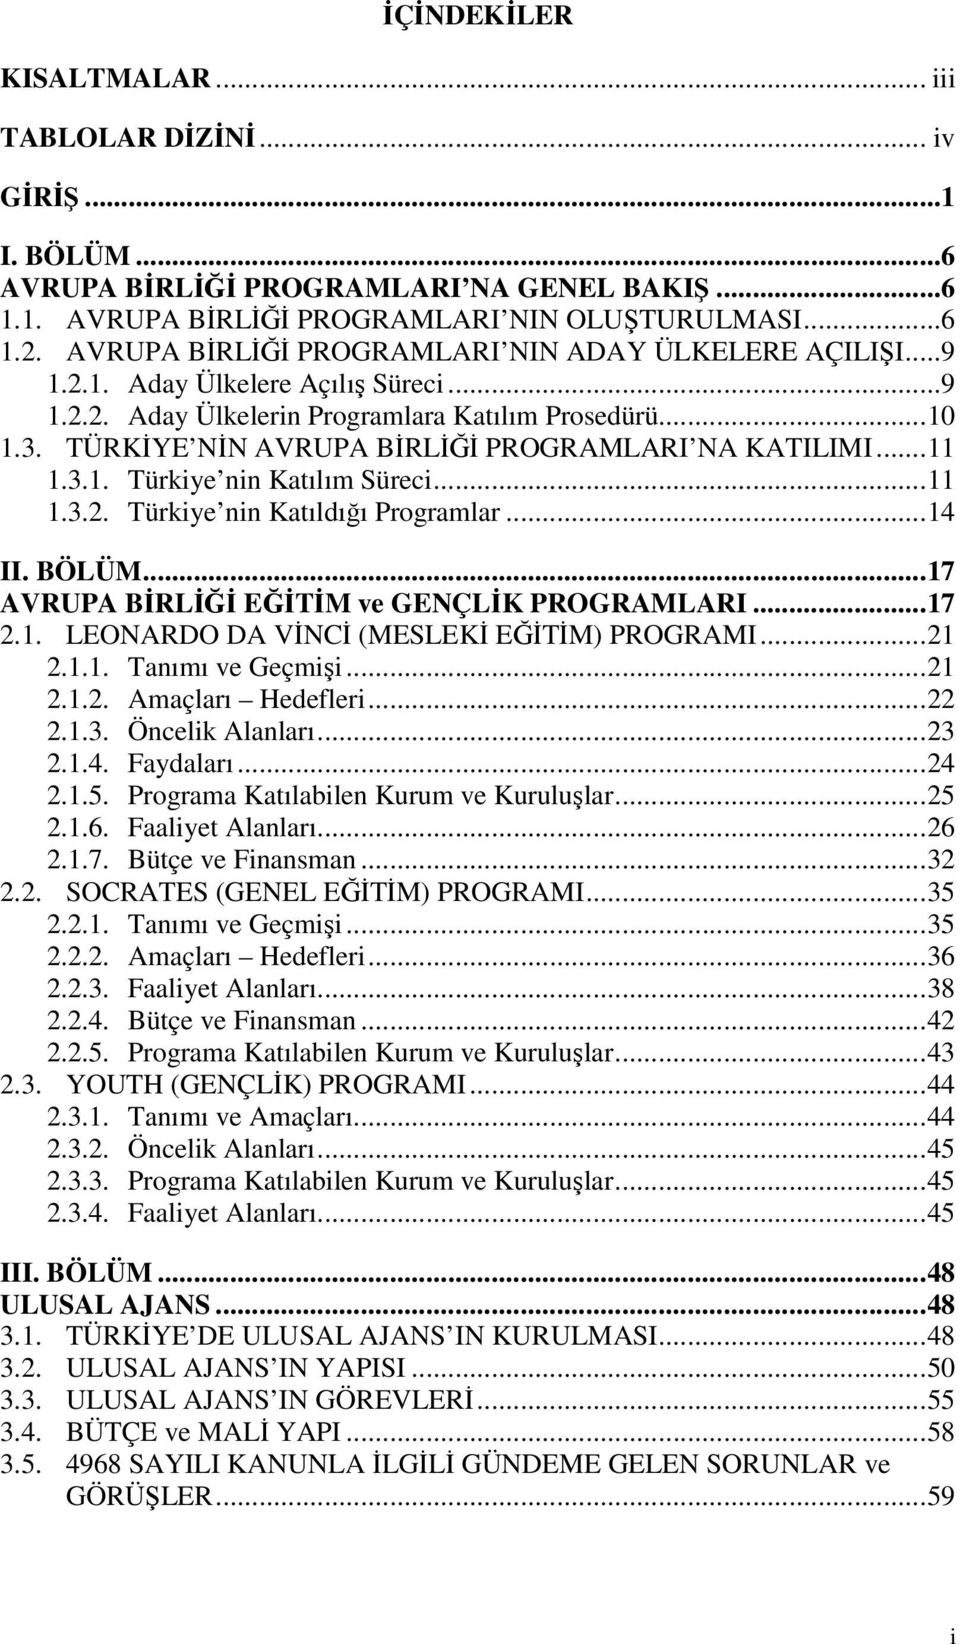 TÜRKİYE NİN AVRUPA BİRLİĞİ PROGRAMLARI NA KATILIMI... 11 1.3.1. Türkiye nin Katılım Süreci... 11 1.3.2. Türkiye nin Katıldığı Programlar... 14 II. BÖLÜM.